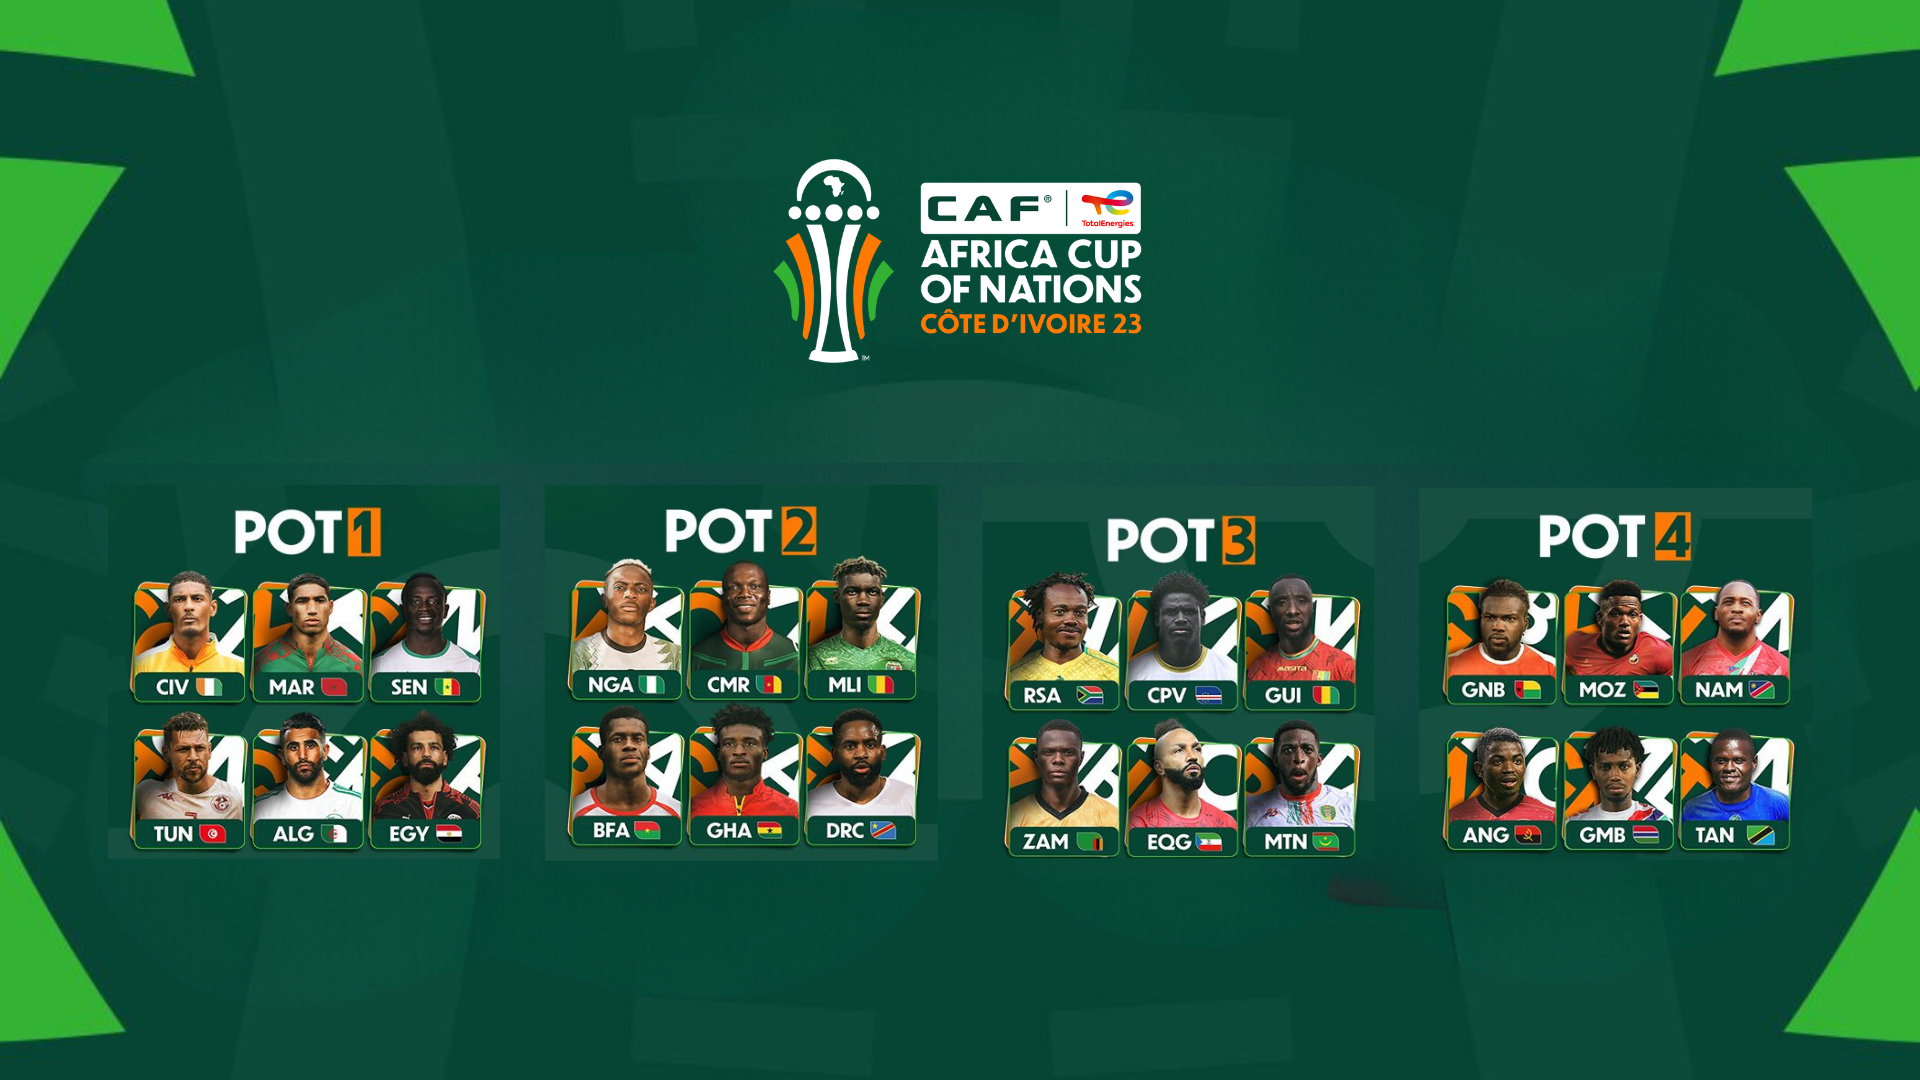 APO Group - Africa Newsroom / Comunicado de imprensa  Revelada nova  identidade para TotalEnergies Confederação Africana de Futebol (CAF) Africa  Cup of Nations Côte d'Ivoire 2023